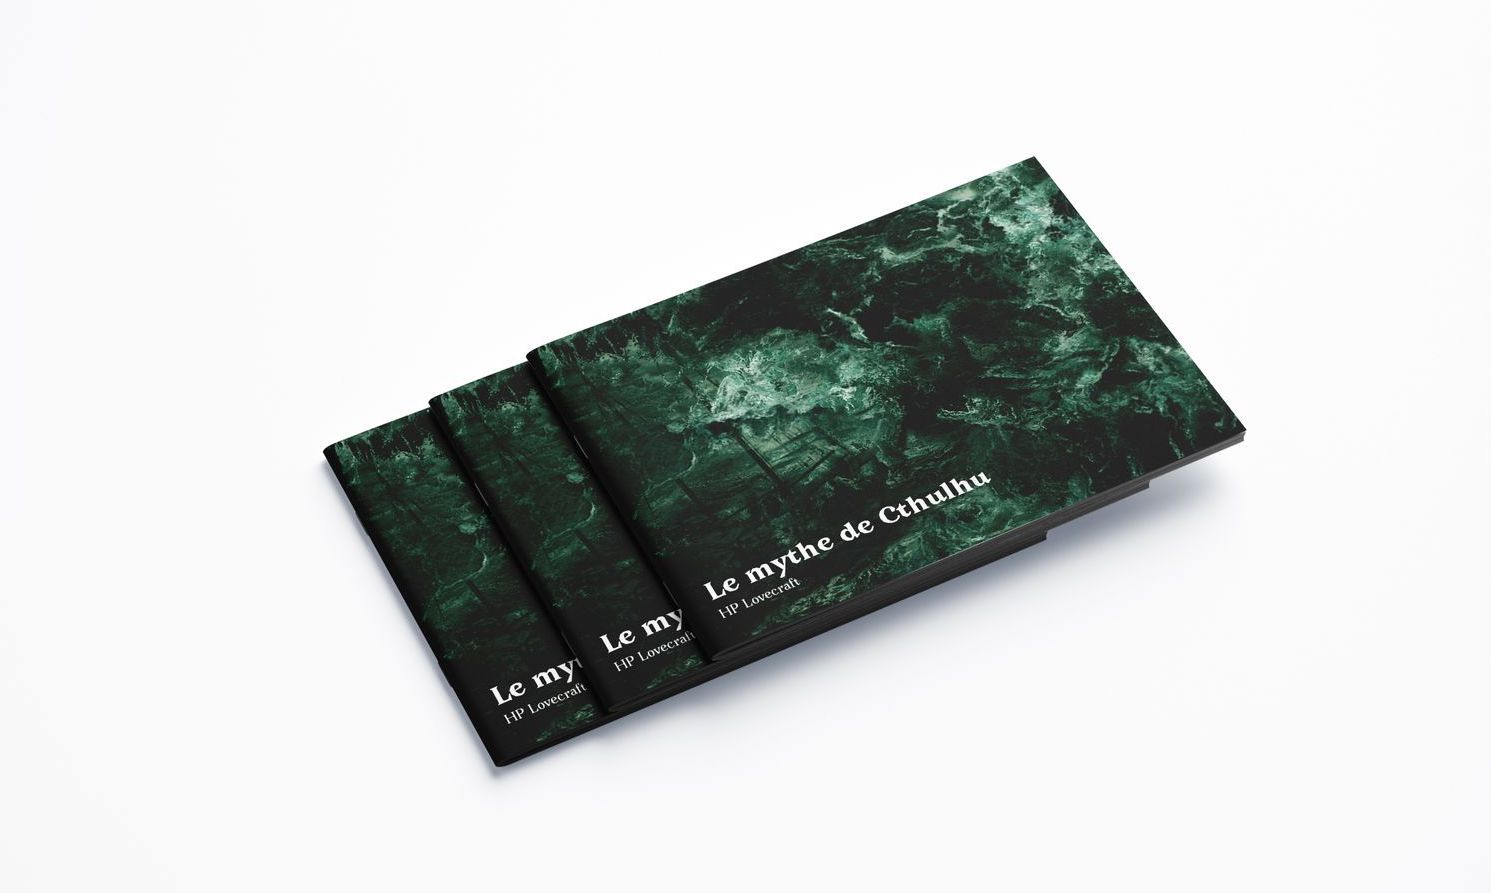 HP Lovecraft - Mythe de Cthulhu - Édition augmentée - Lycée Jacques Prévert- 2019 © Marie-Liesse de Solages